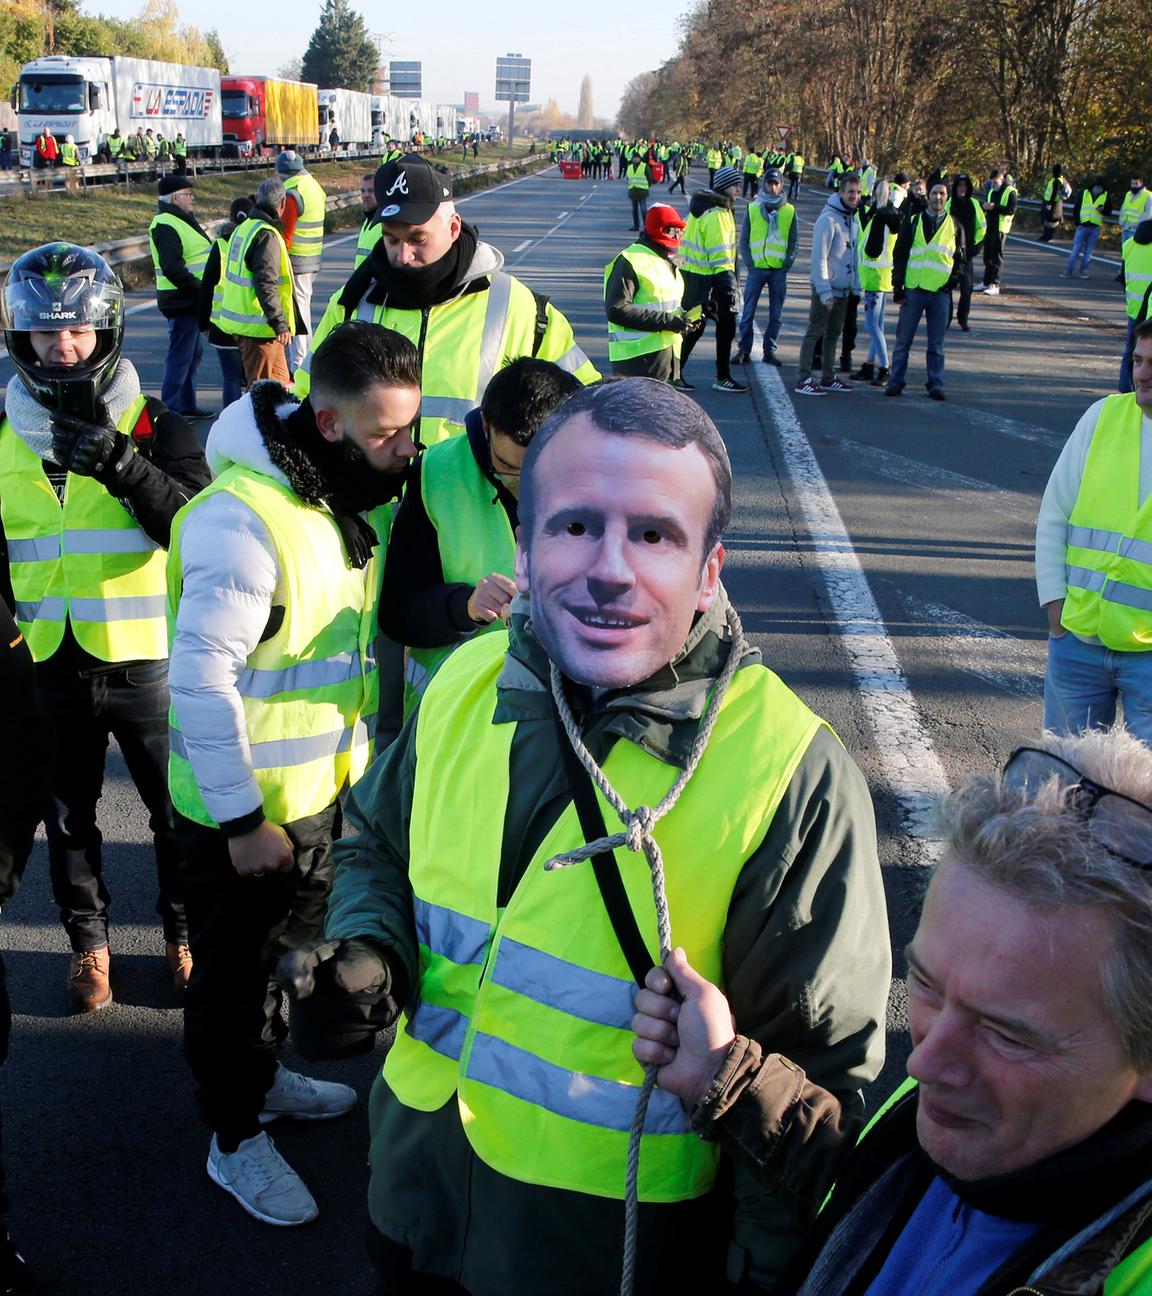 Demonstranten mit gelben Warnwesten laufen durch Frankreichs Straßen. Einer trägt eine Maske des französischen Präsidenten Macron am 17.11.2018 in Haulchin.